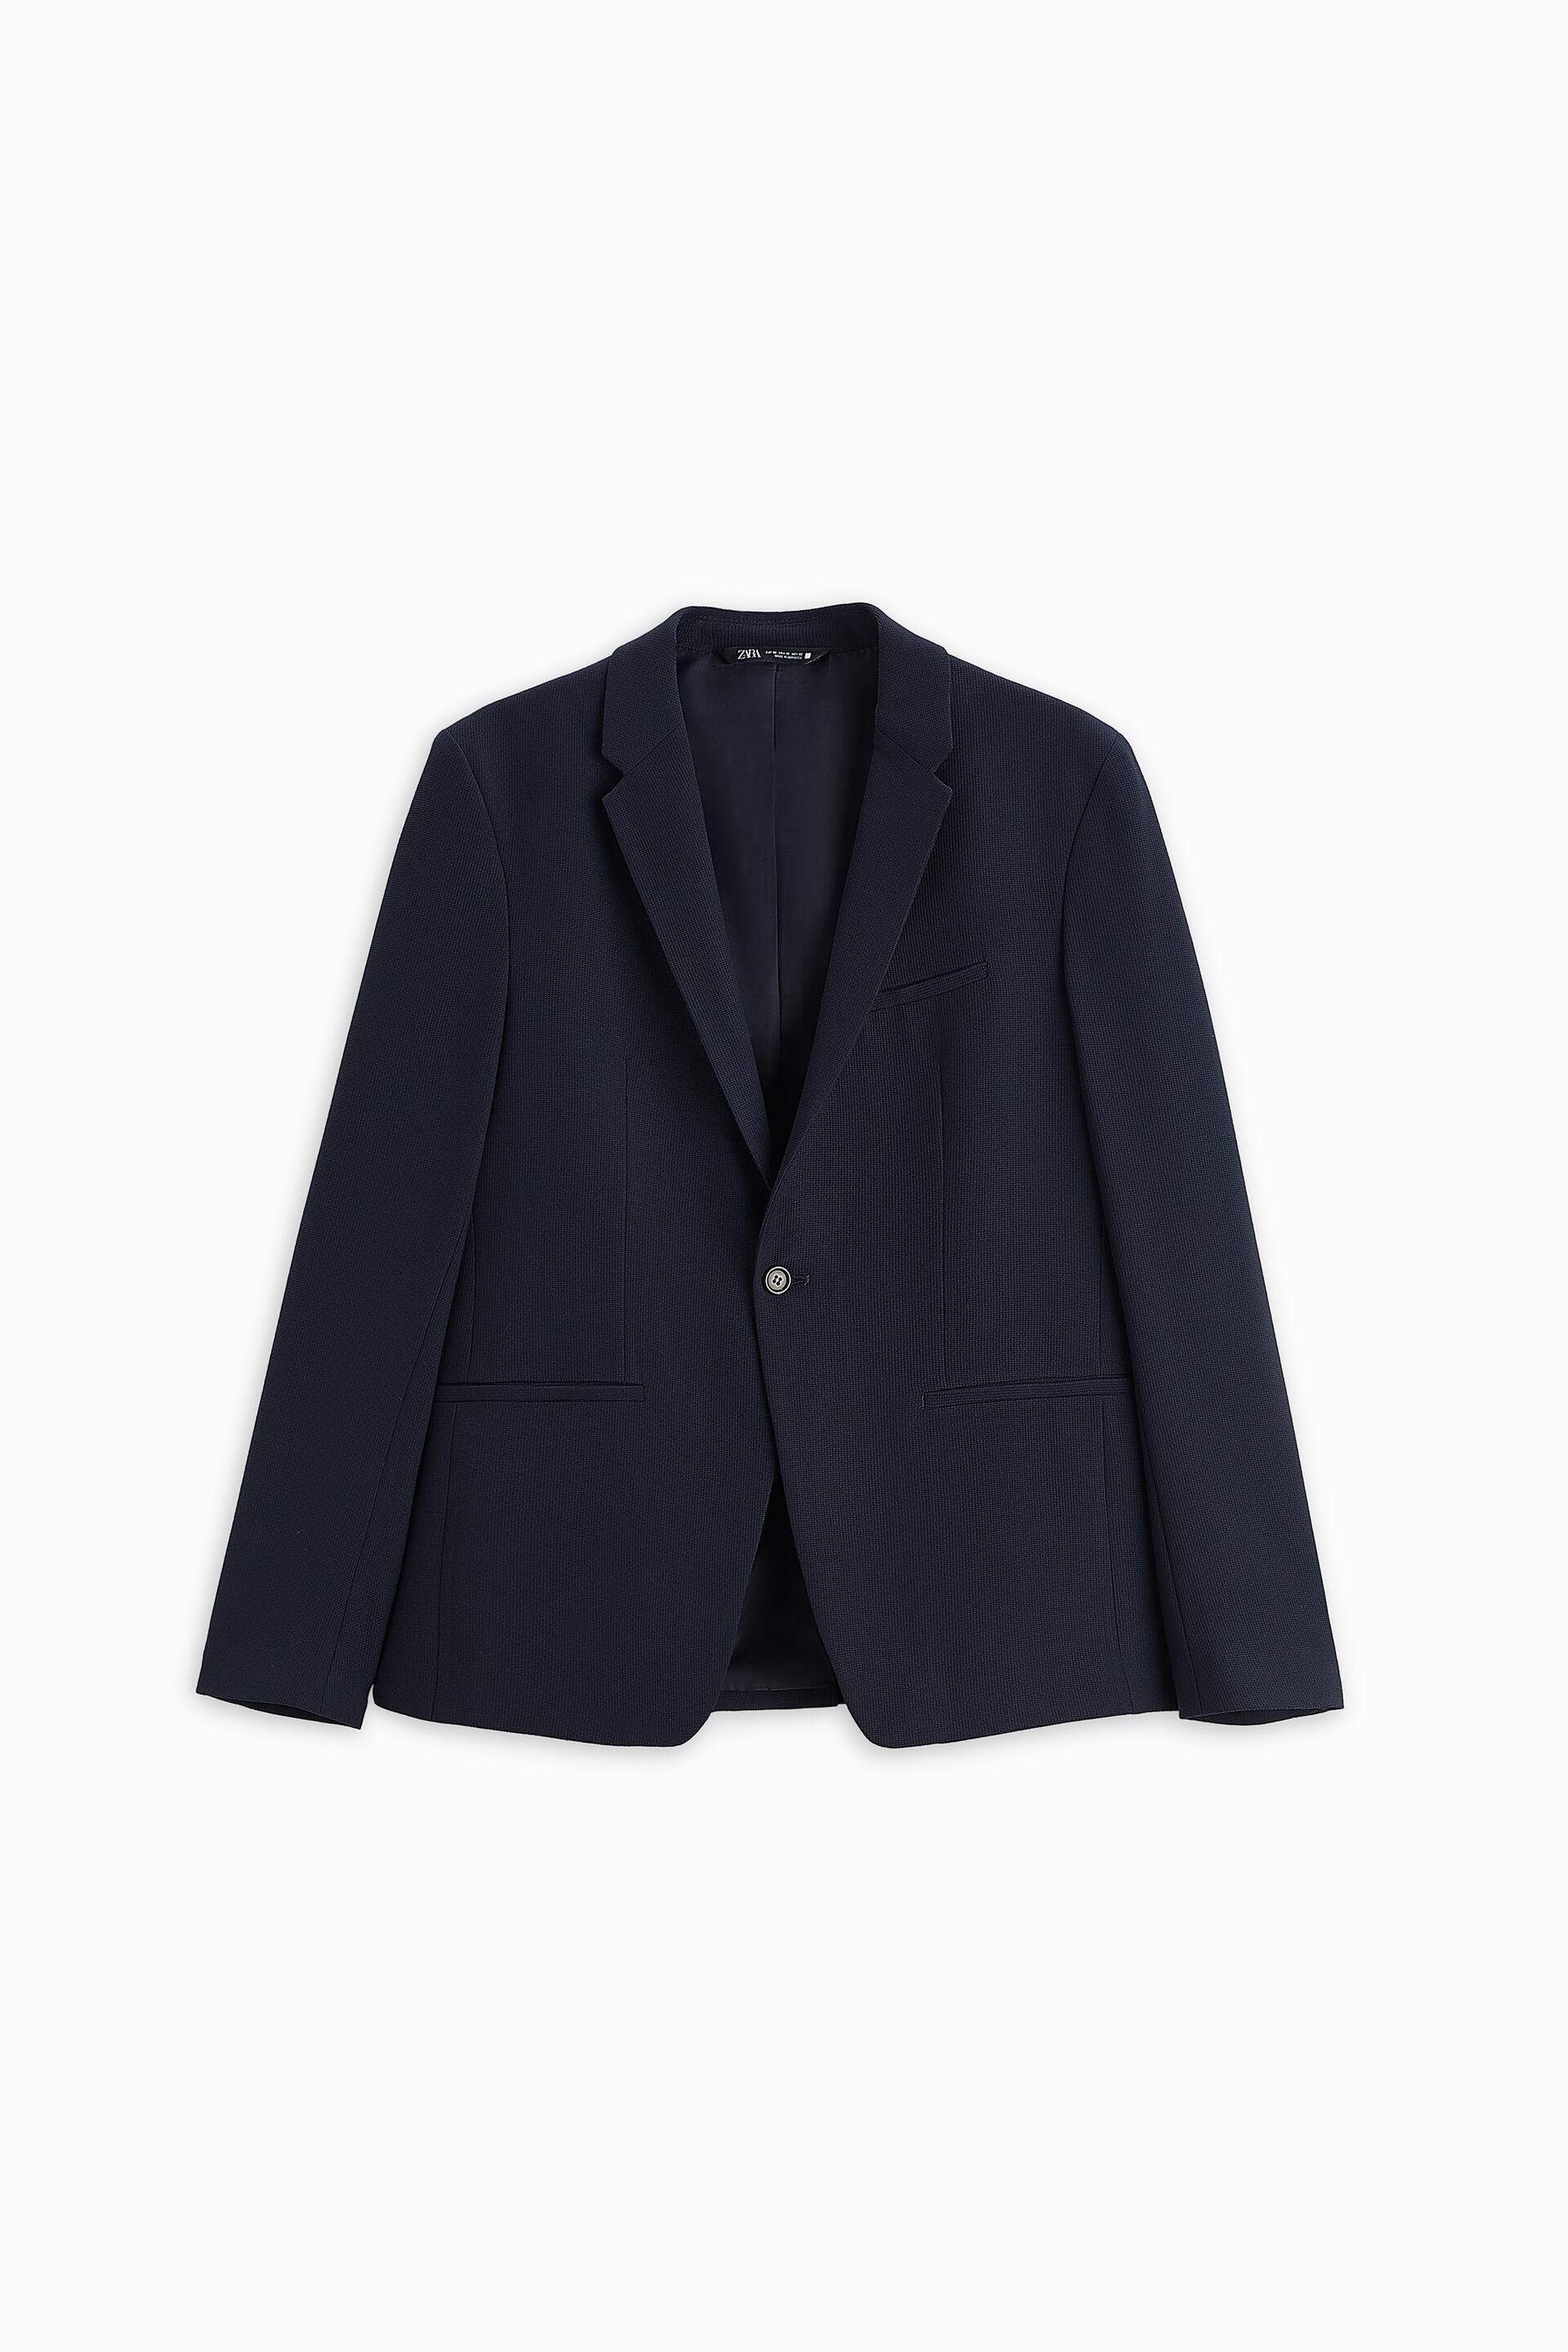 Blazer Zara terno azul - Comprar em Guerini Store